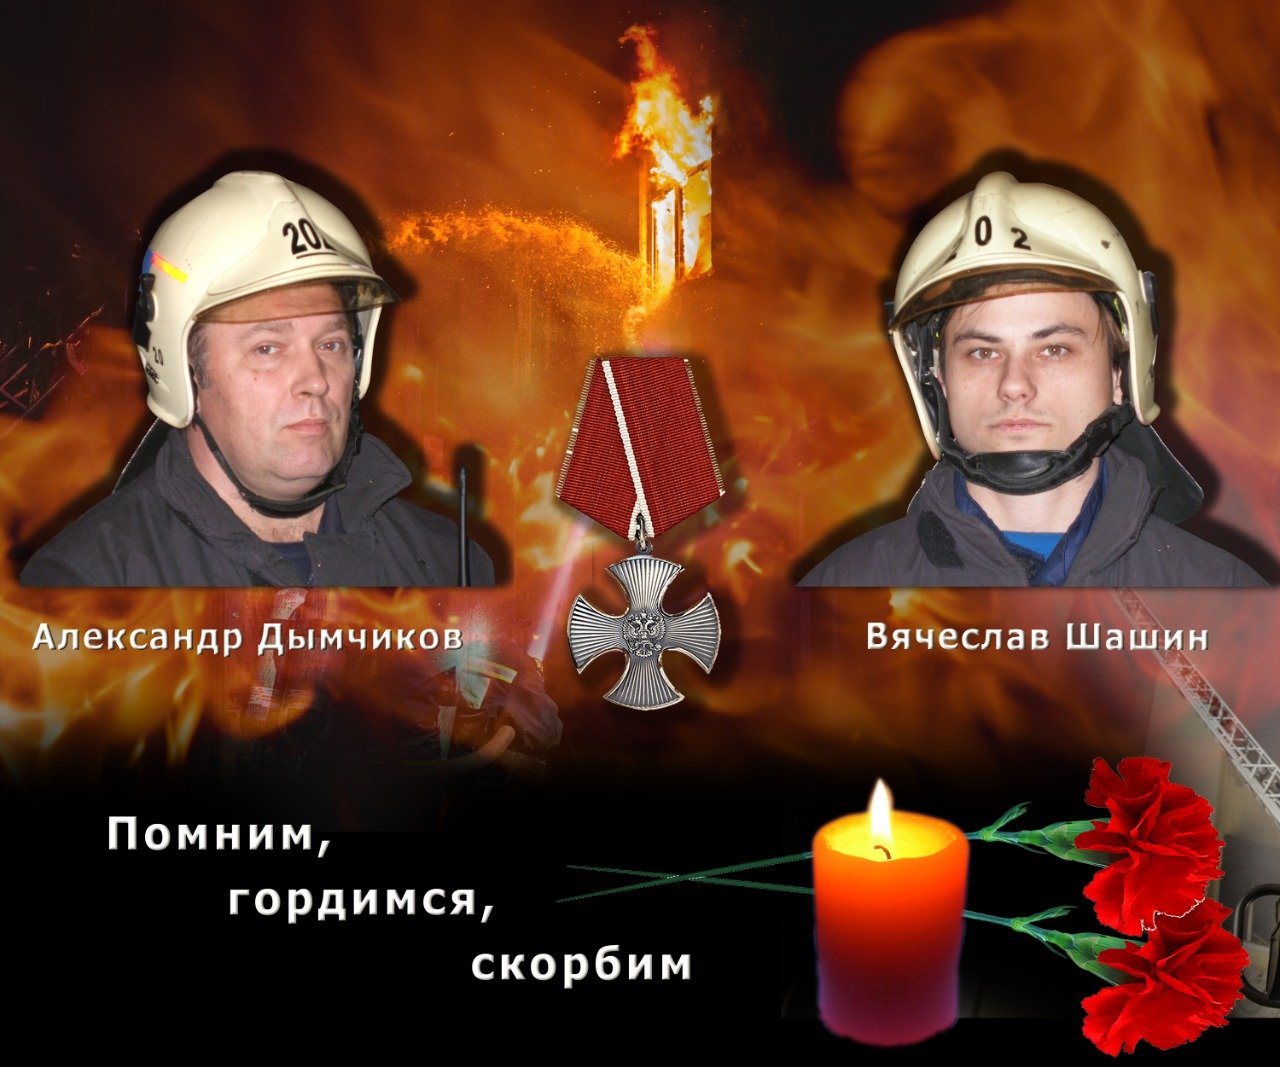 В год памяти и славы спасатели столицы увековечили память погибших коллег